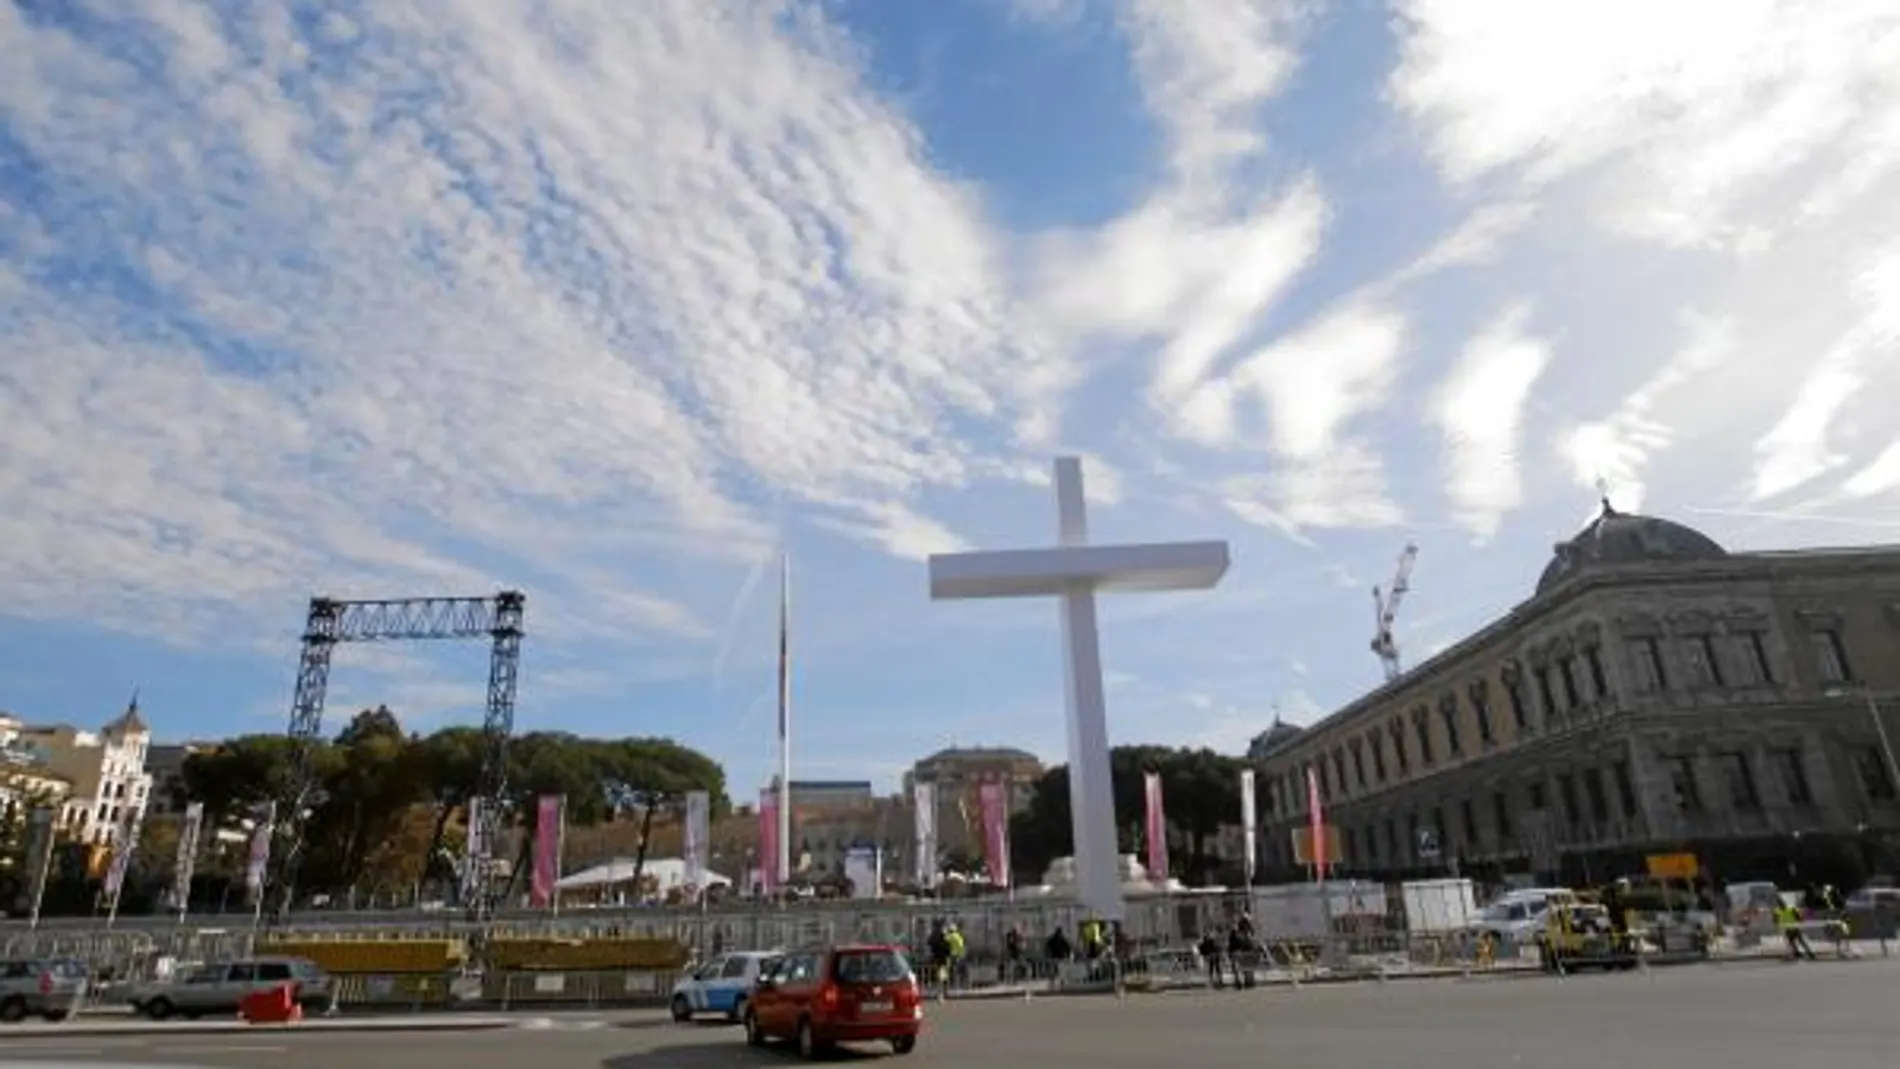 Preparativos En la Plaza de Colón de Madrid ya se alza una gran cruz de 20 metros marcando el escenario de la gran Eucaristía del próximo domingo